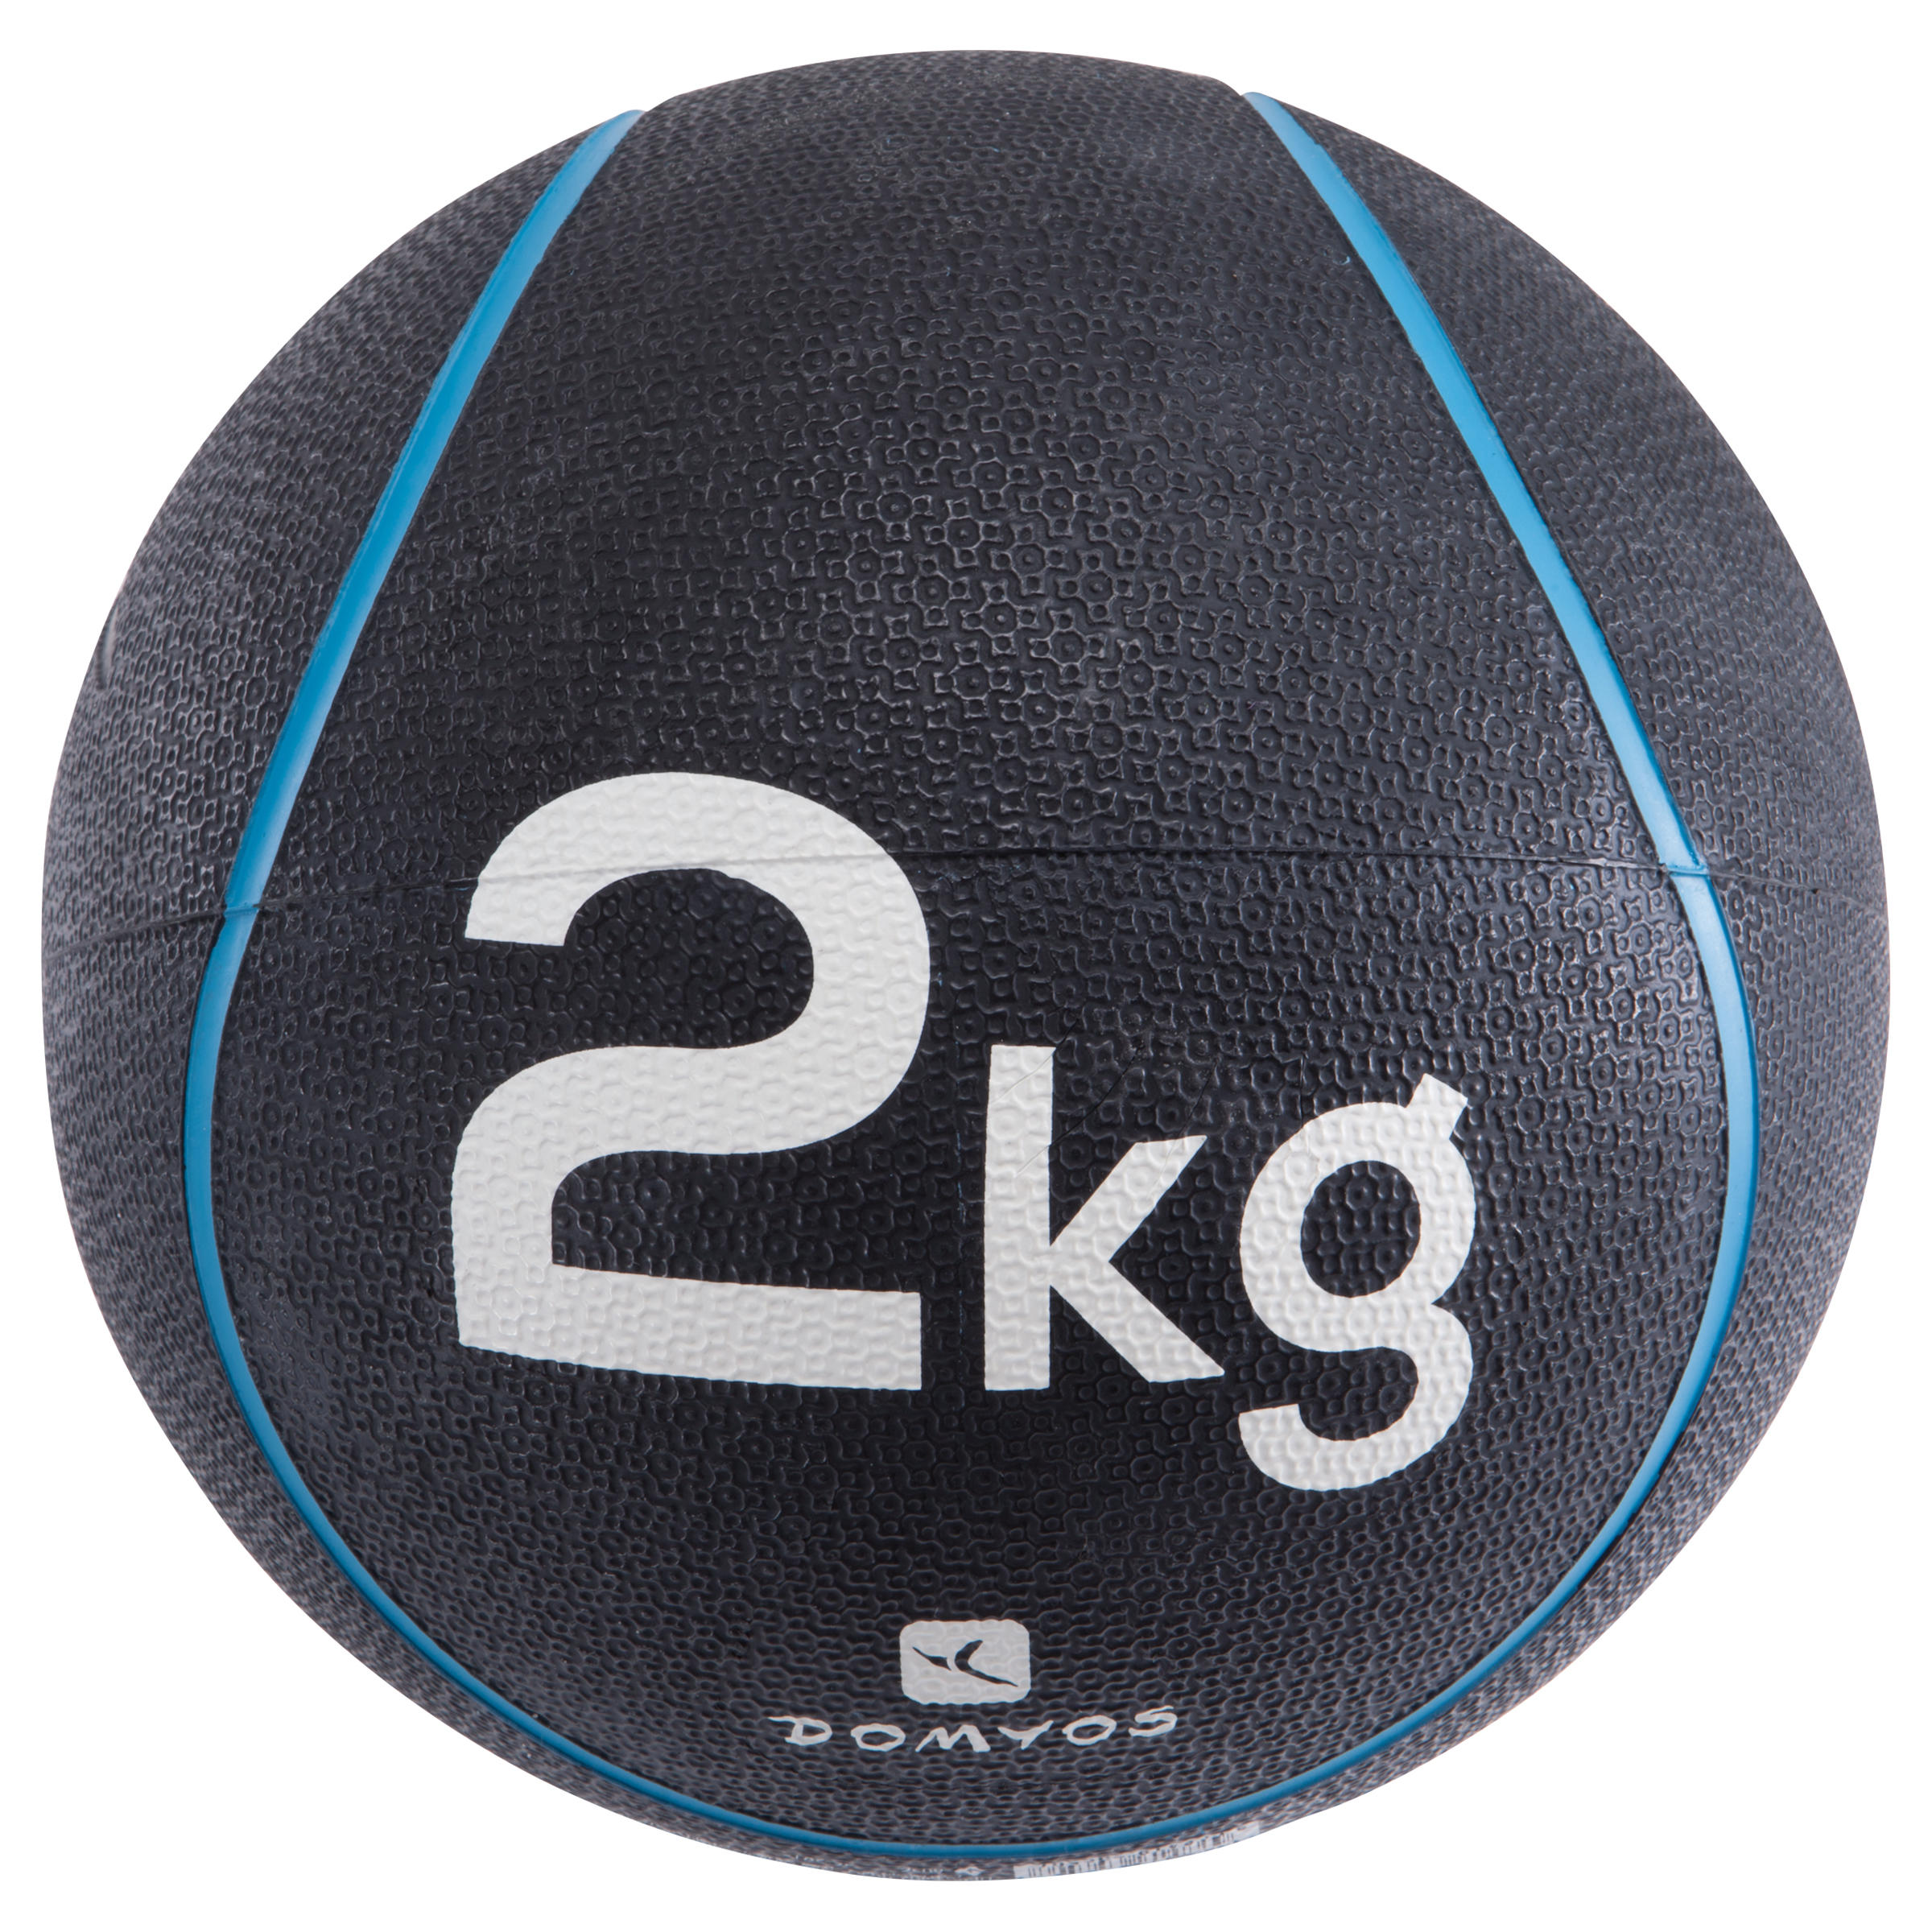 จัดส่งฟรี ลูกบอลน้ำหนักรุ่น ToneBall 2 กก./ เส้นผ่านศูนย์กลาง 22 ซม.